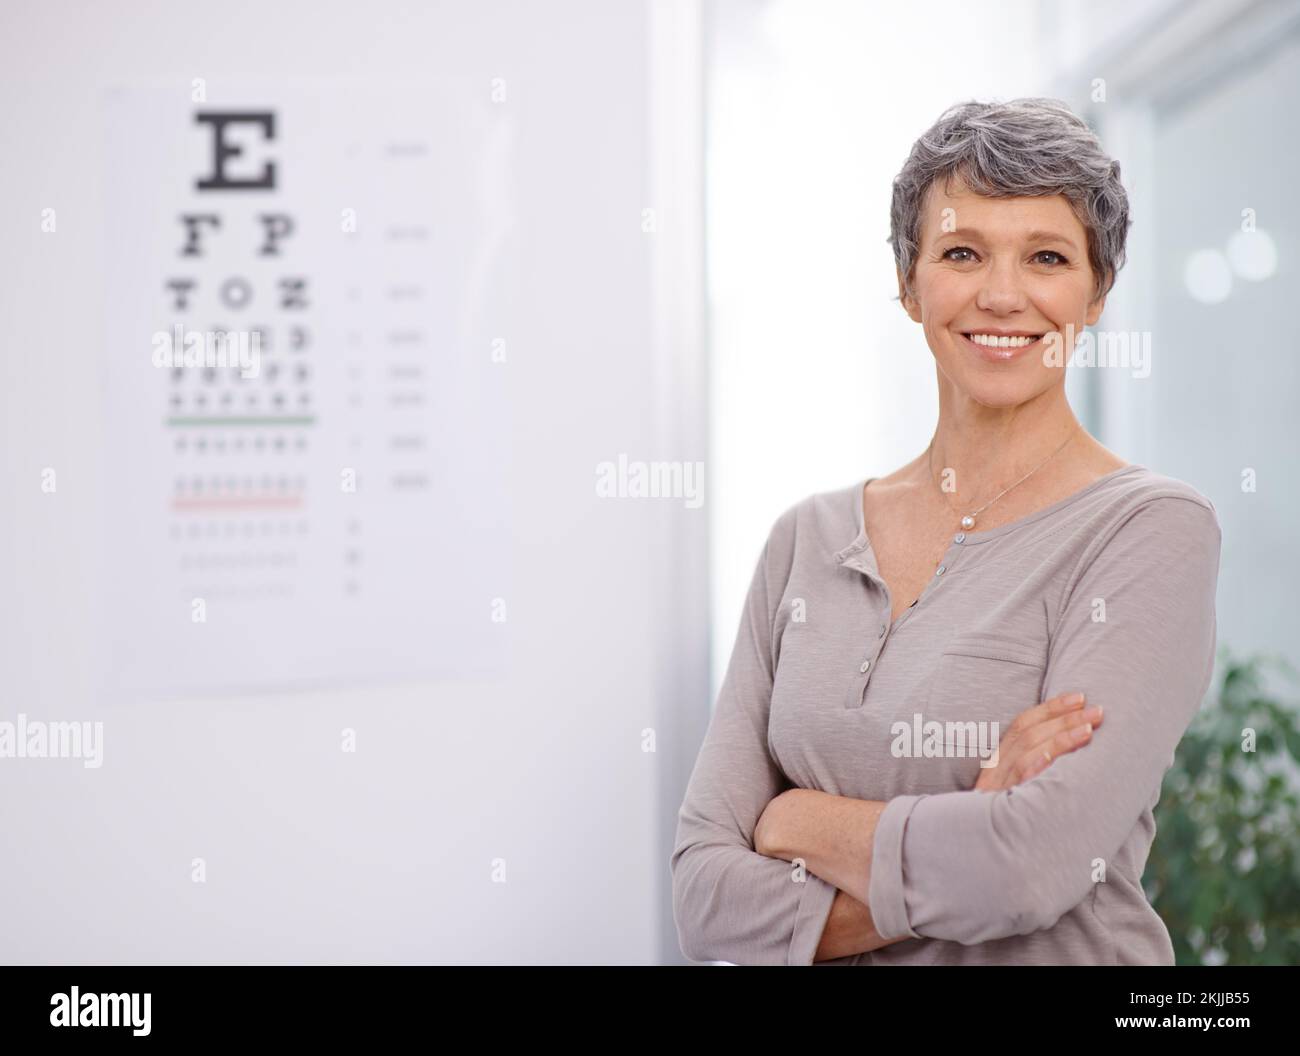 Pass gut auf deine Augen auf. Porträt einer Optikerin, die neben einem Augentestposter steht. Stockfoto